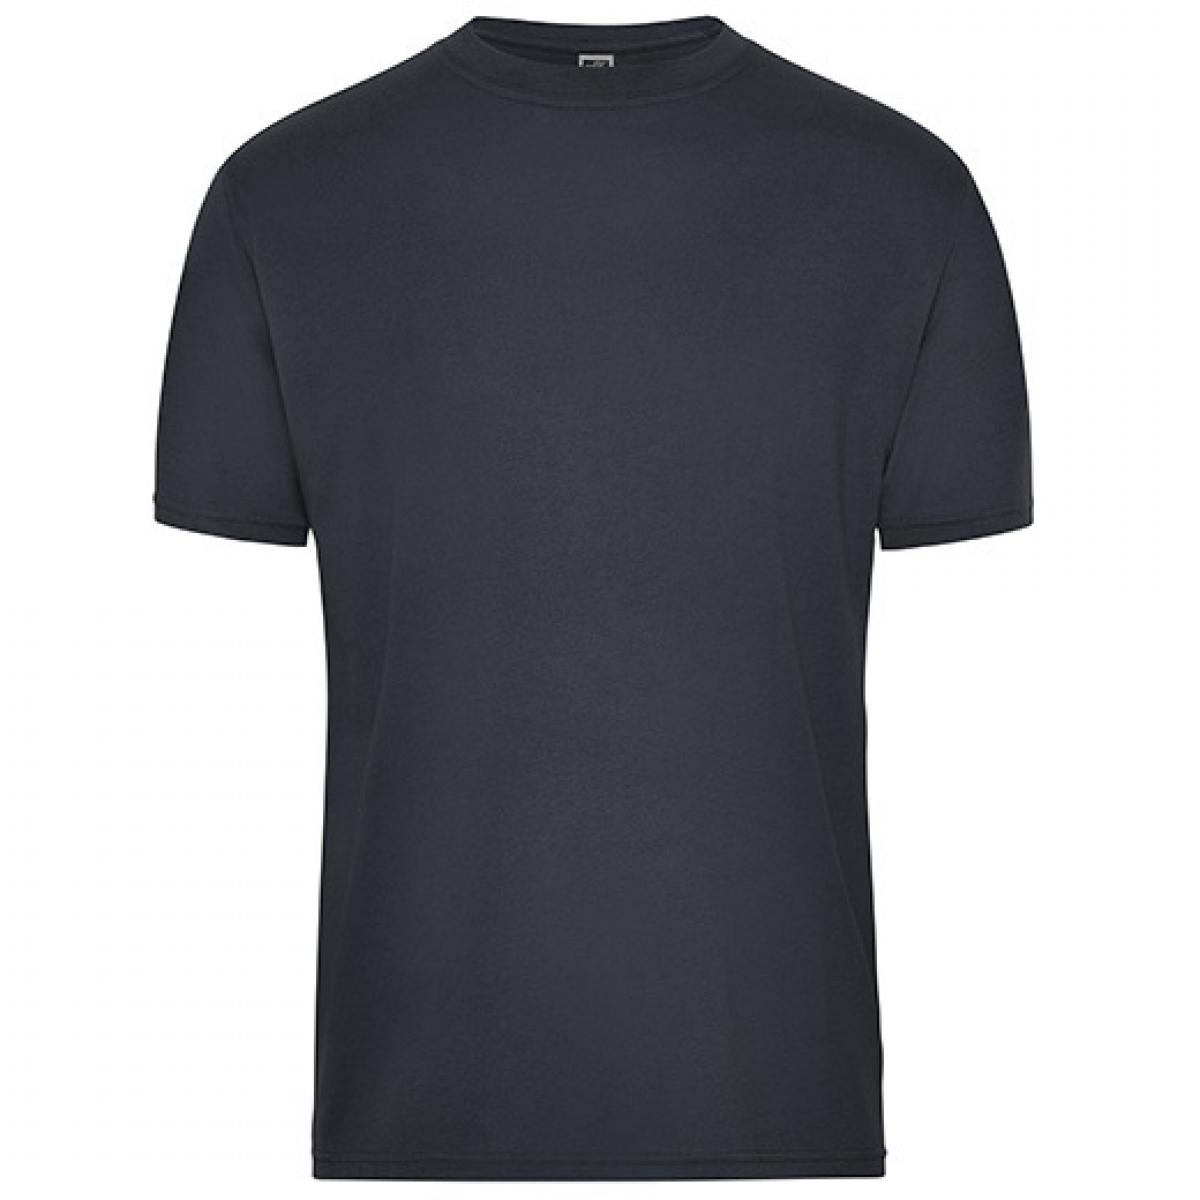 Hersteller: James+Nicholson Herstellernummer: JN1808 Artikelbezeichnung: Men‘s BIO Workwear T-Shirt, Waschbar bis 60 °C Farbe: Carbon